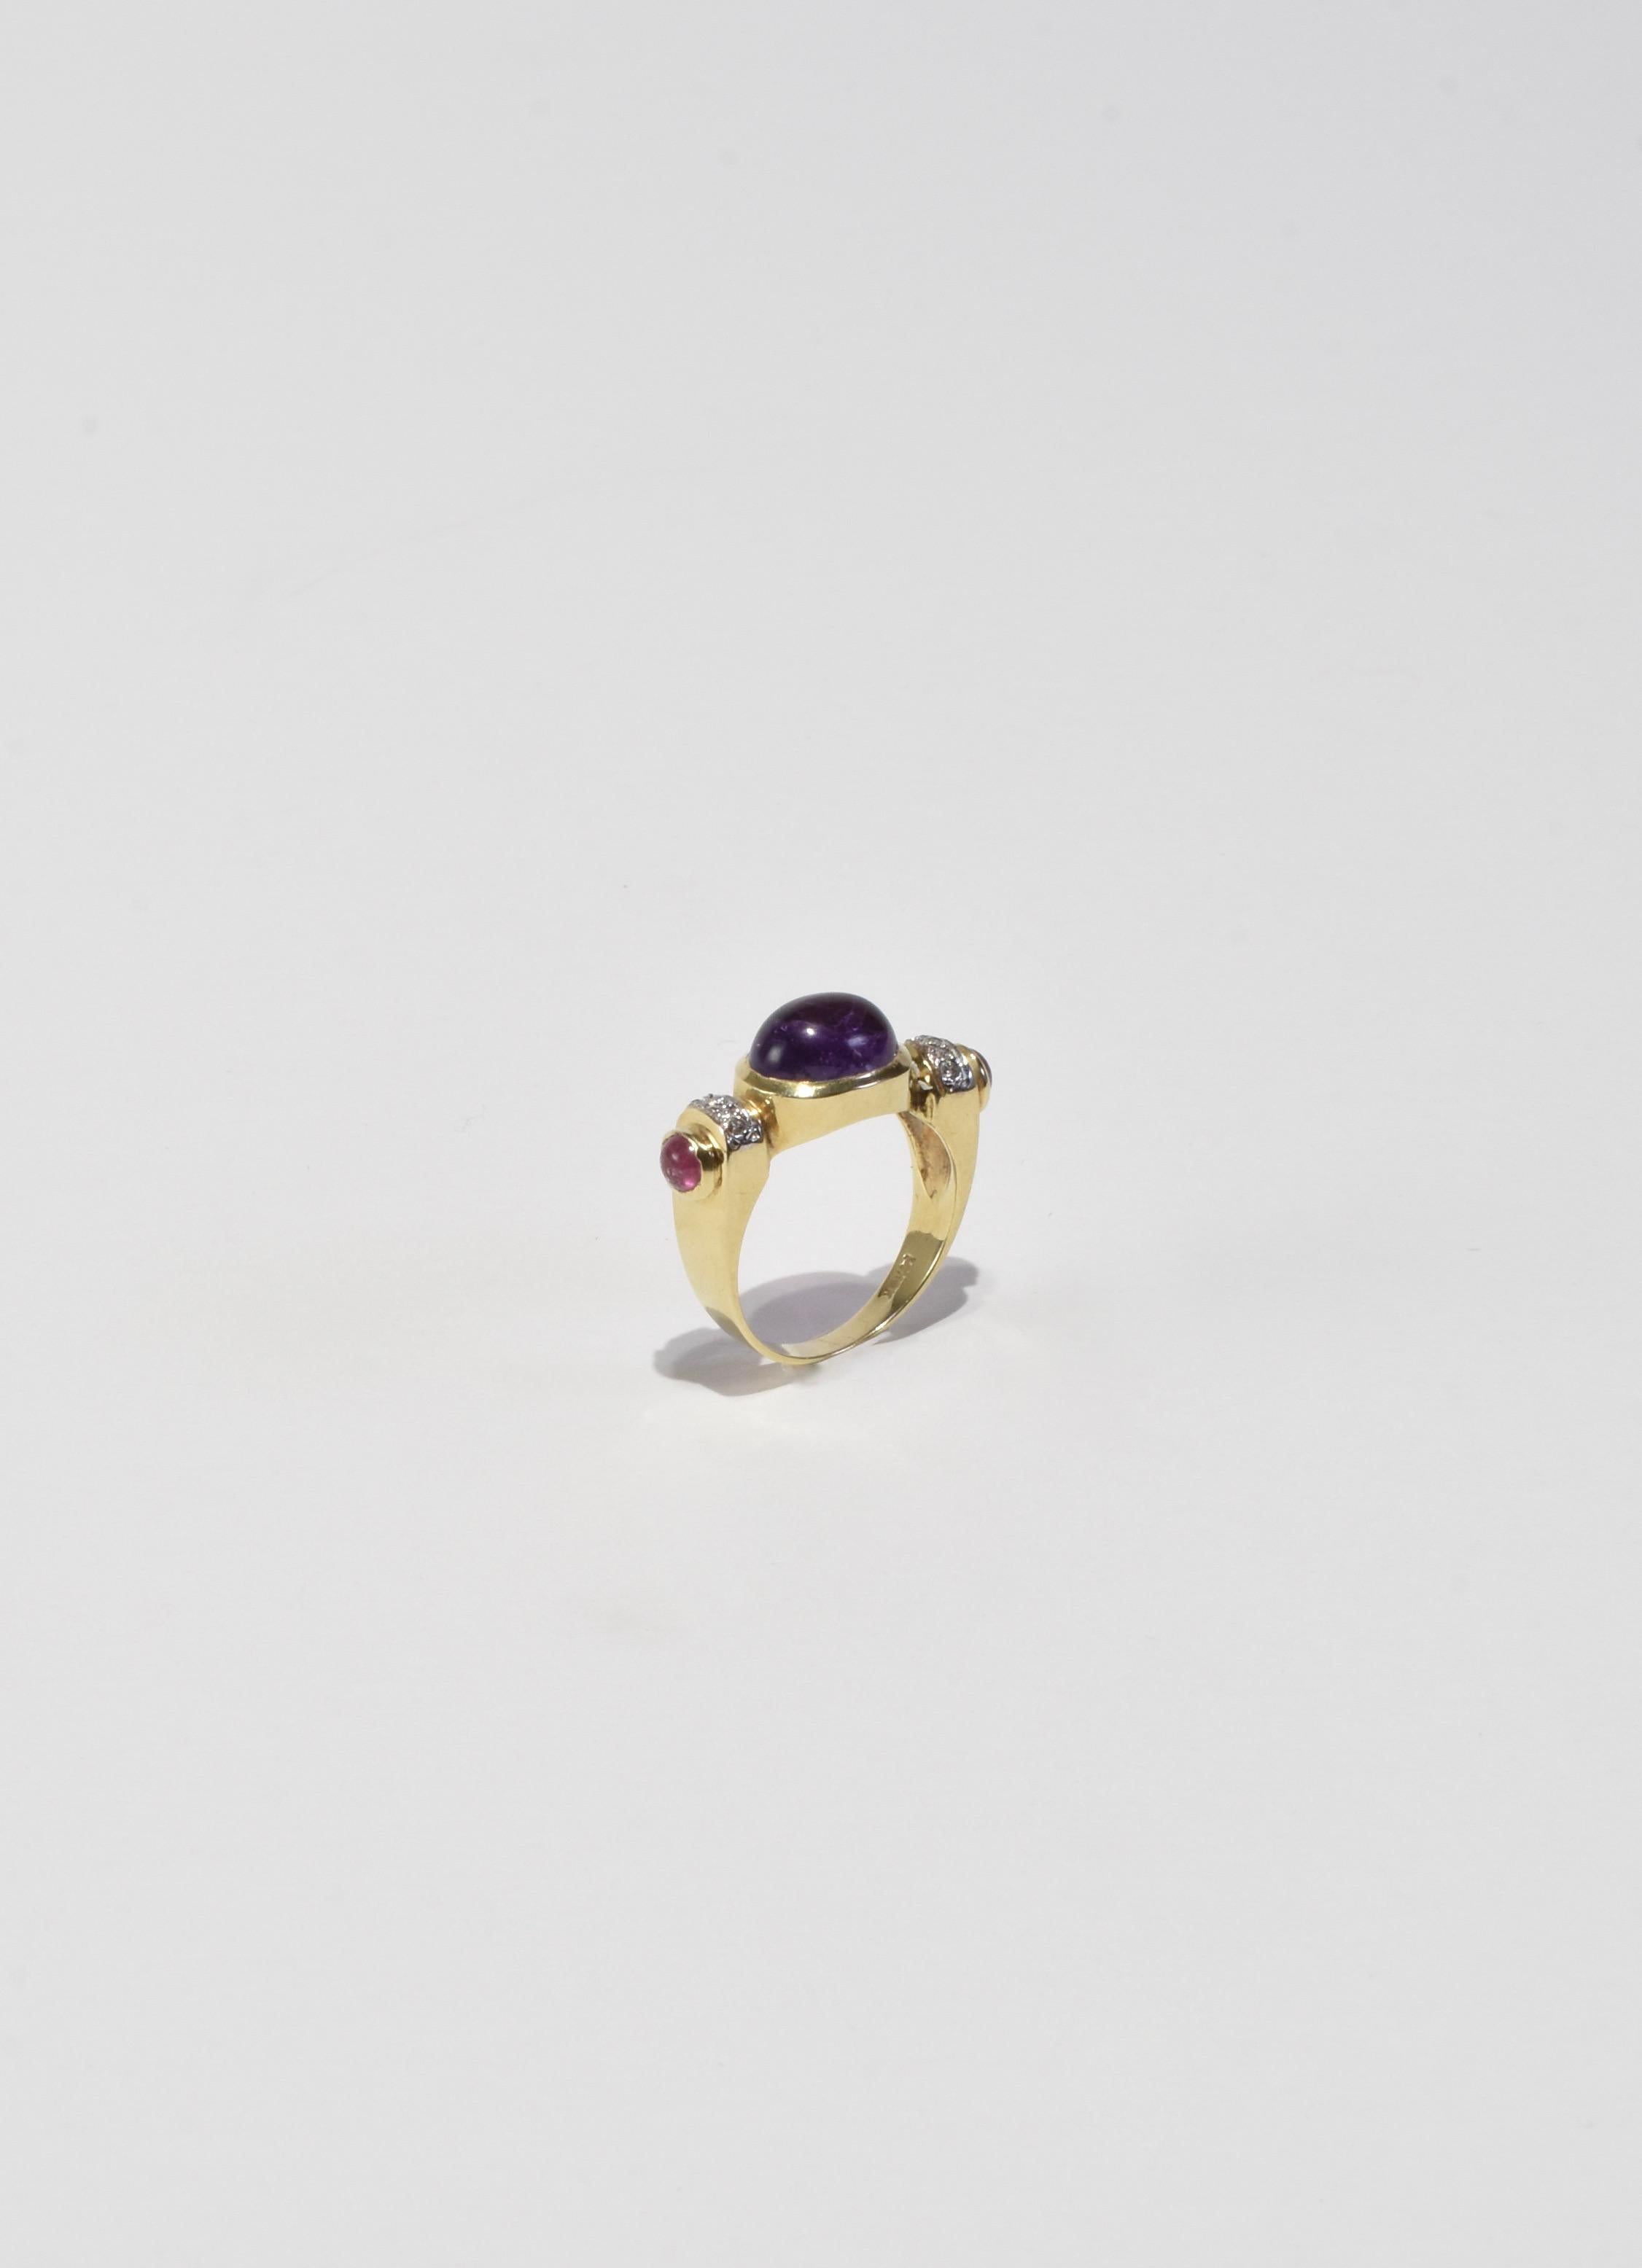 Cabochon Amethyst Ruby Diamond Ring